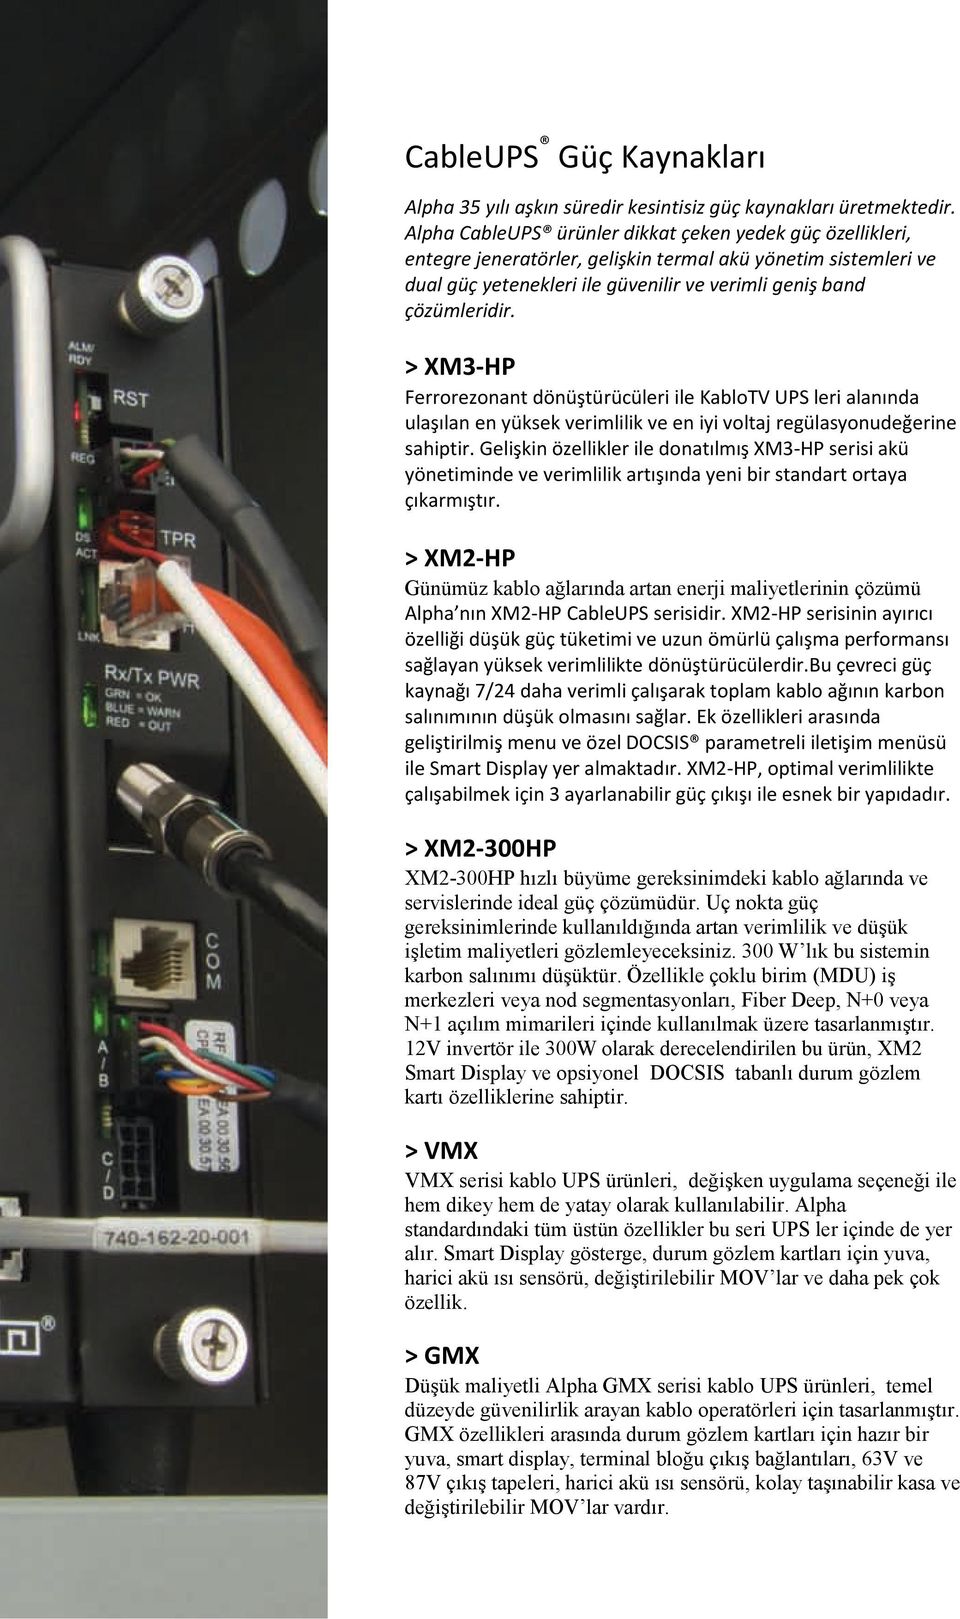 > XM3-HP Ferrorezonant dönüştürücüleri ile KabloTV UPS leri alanında ulaşılan en yüksek verimlilik ve en iyi voltaj regülasyonudeğerine sahiptir.